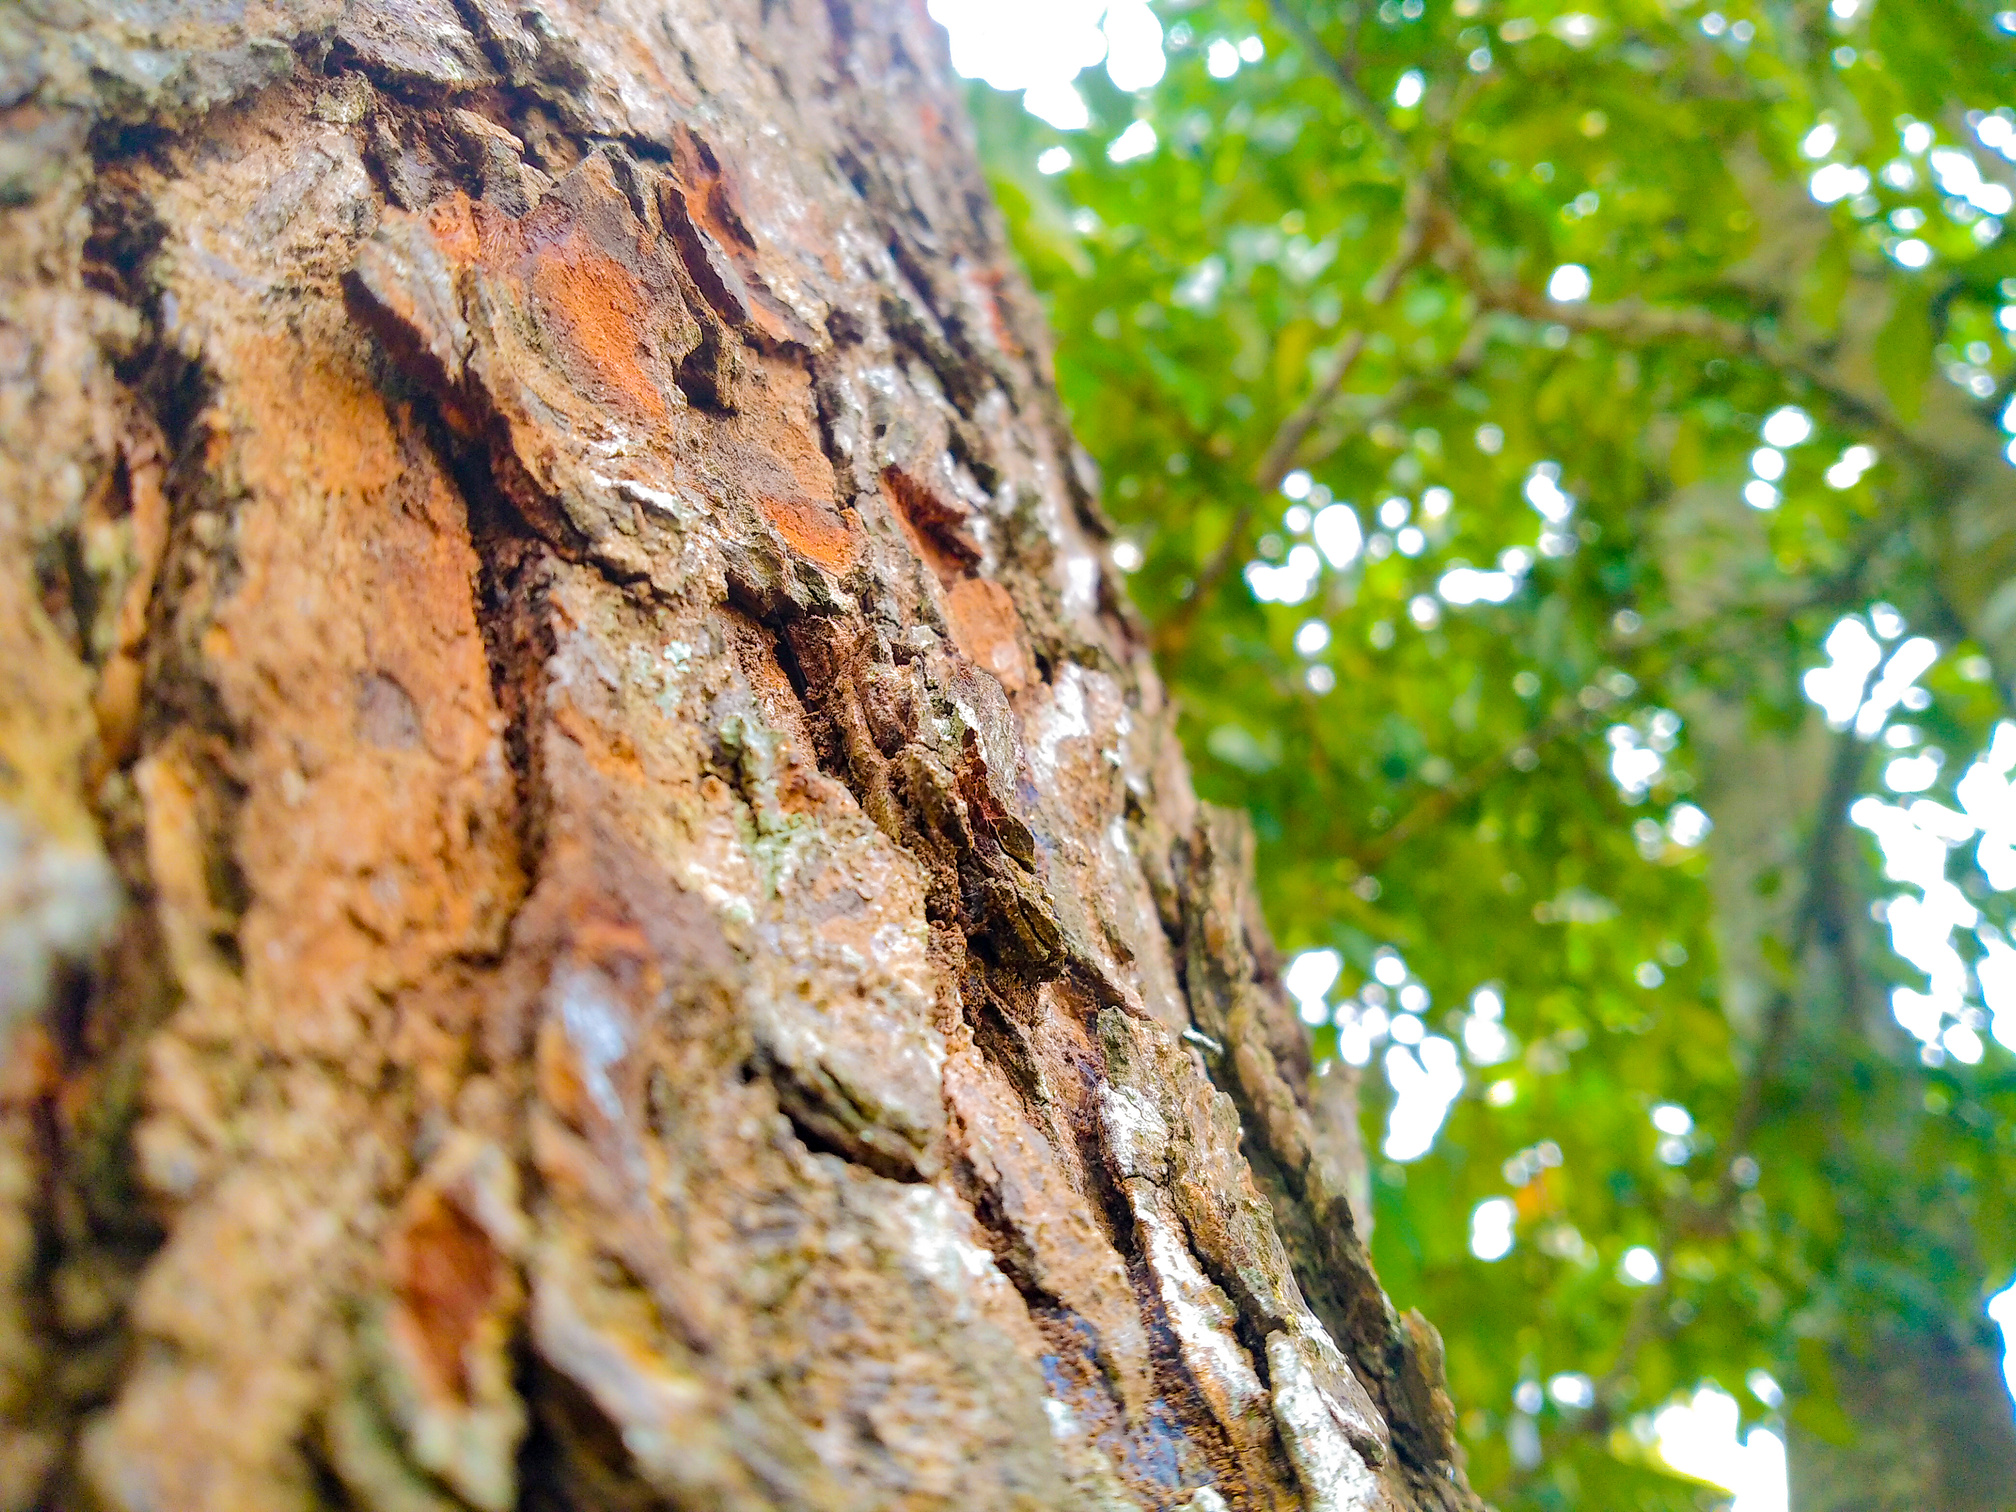 Mahogany tree bark texture